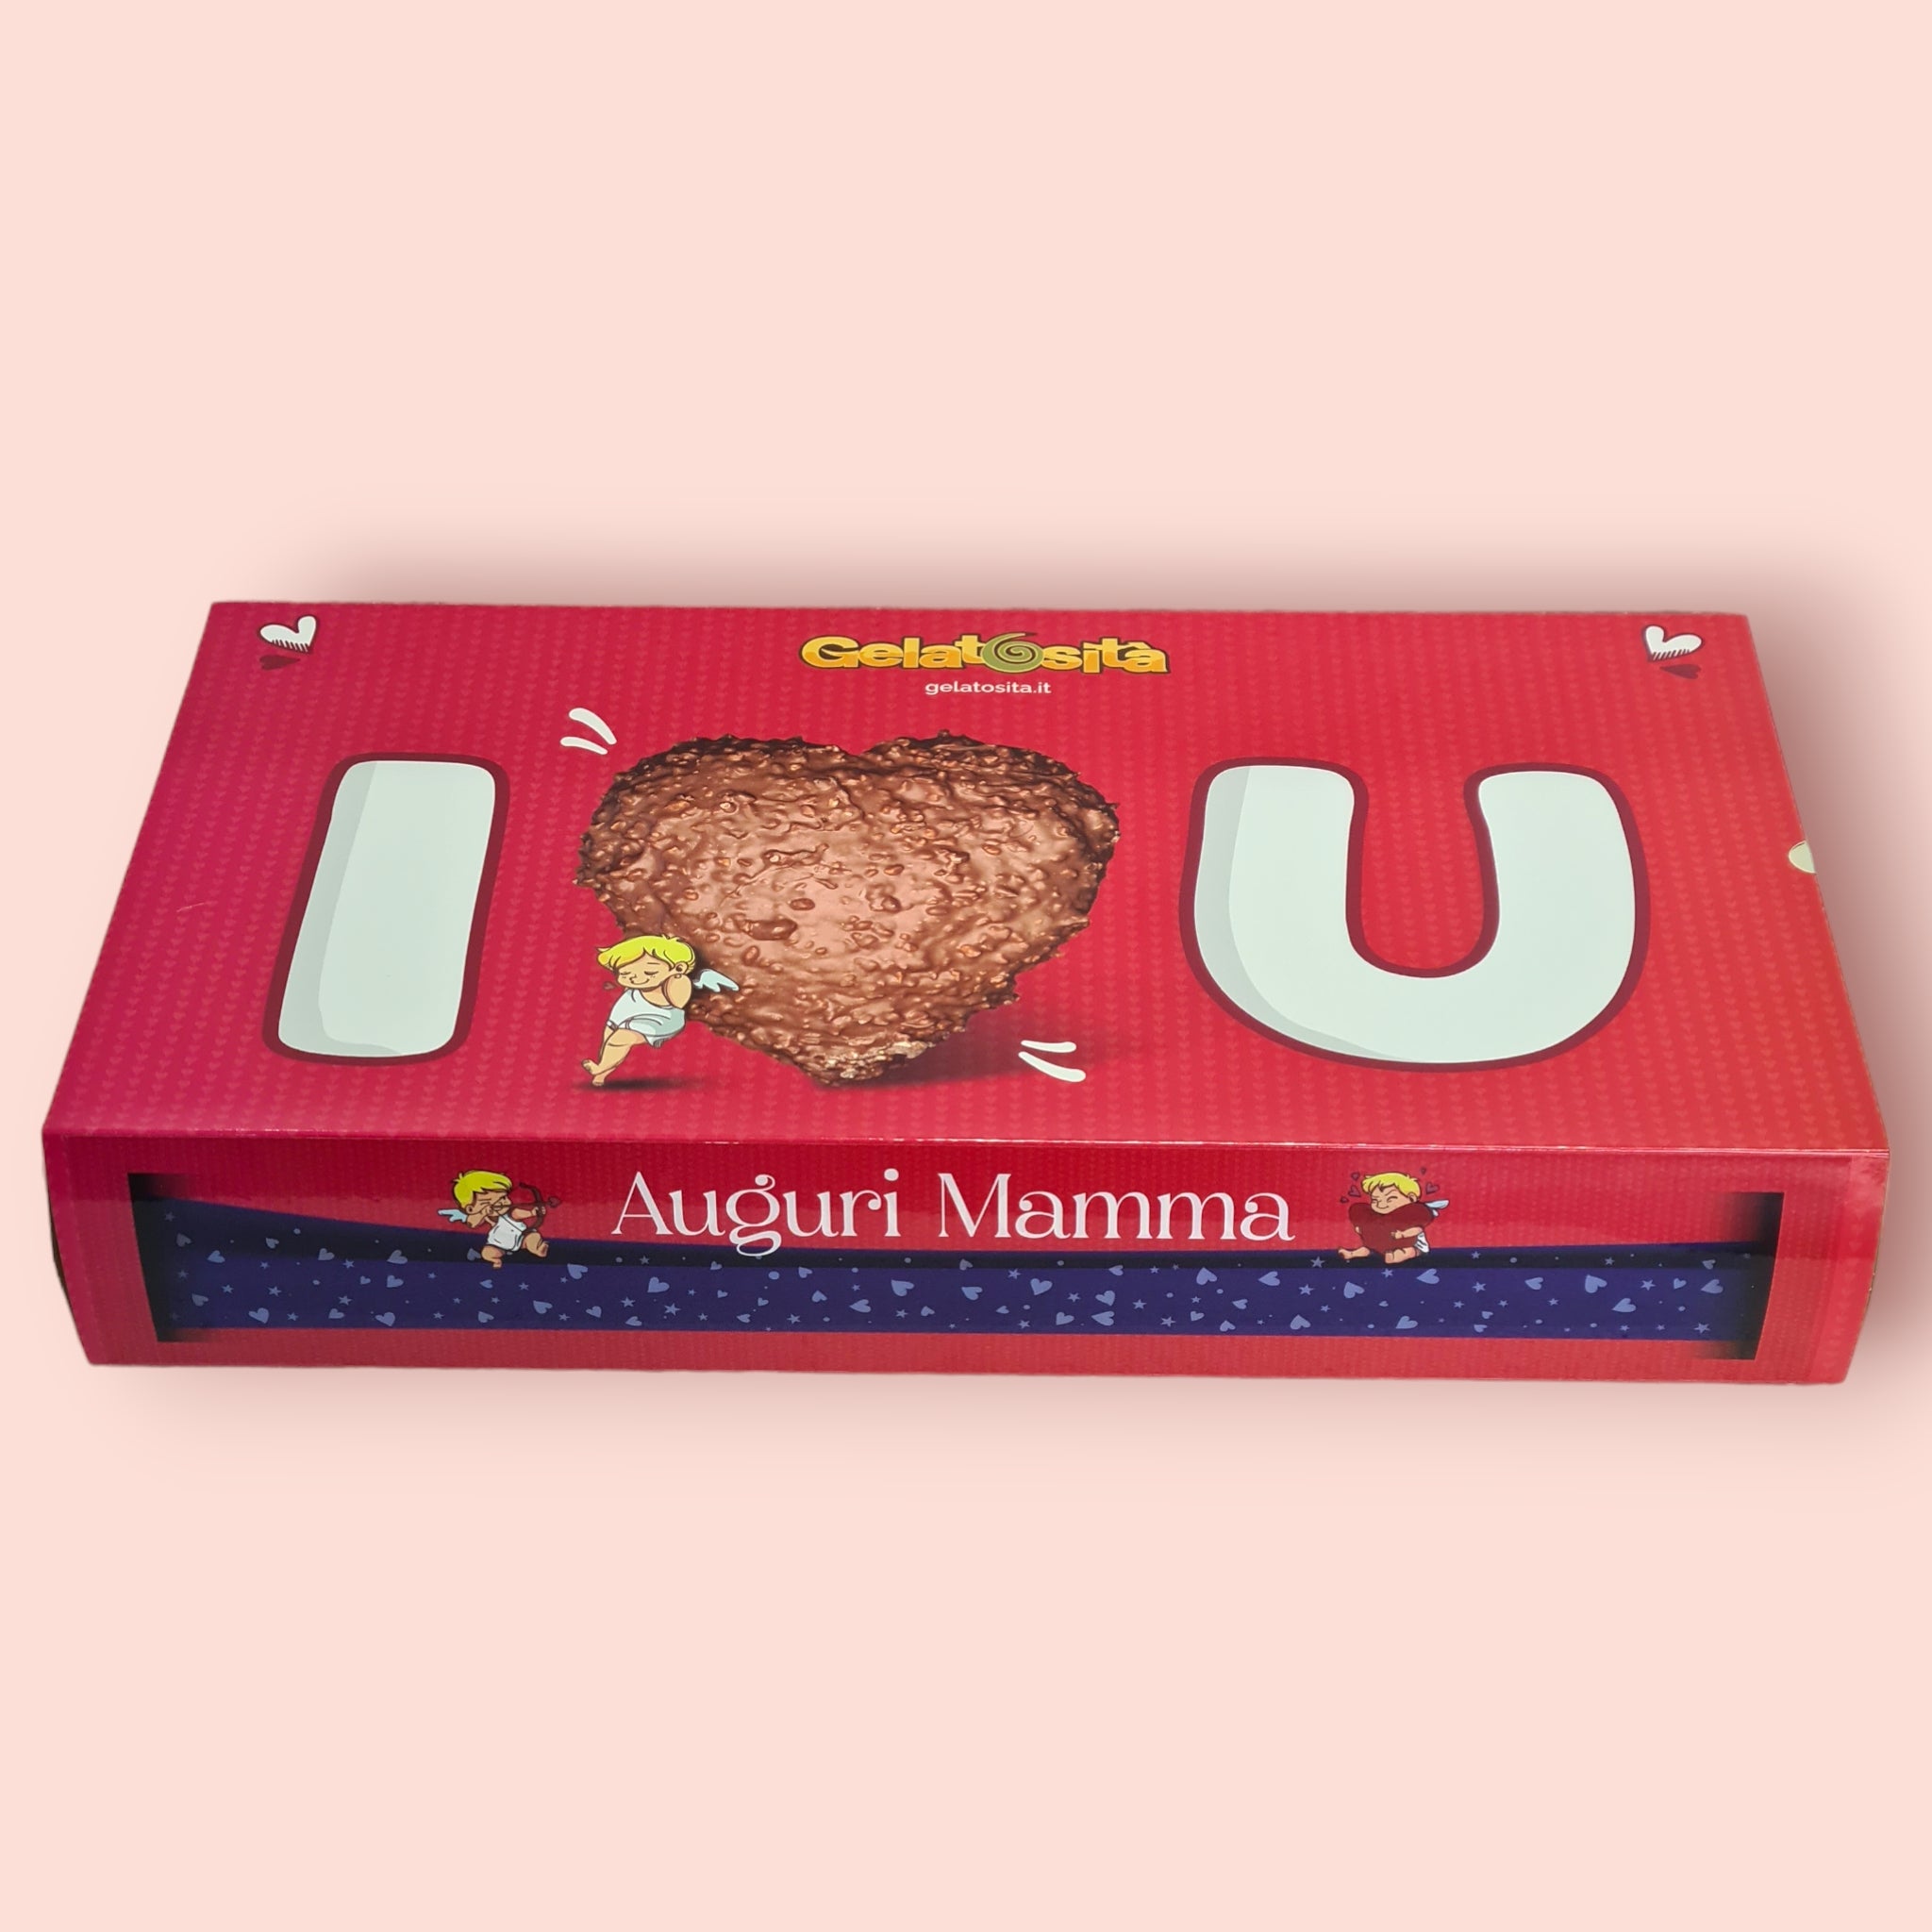 BOX MAMMA, I-LOVE-YOU! Cuore Bianco ripieno Crema Bianca + 5 creme + 2 cioccolatini + rosa e dedica (Ed. Limitata)